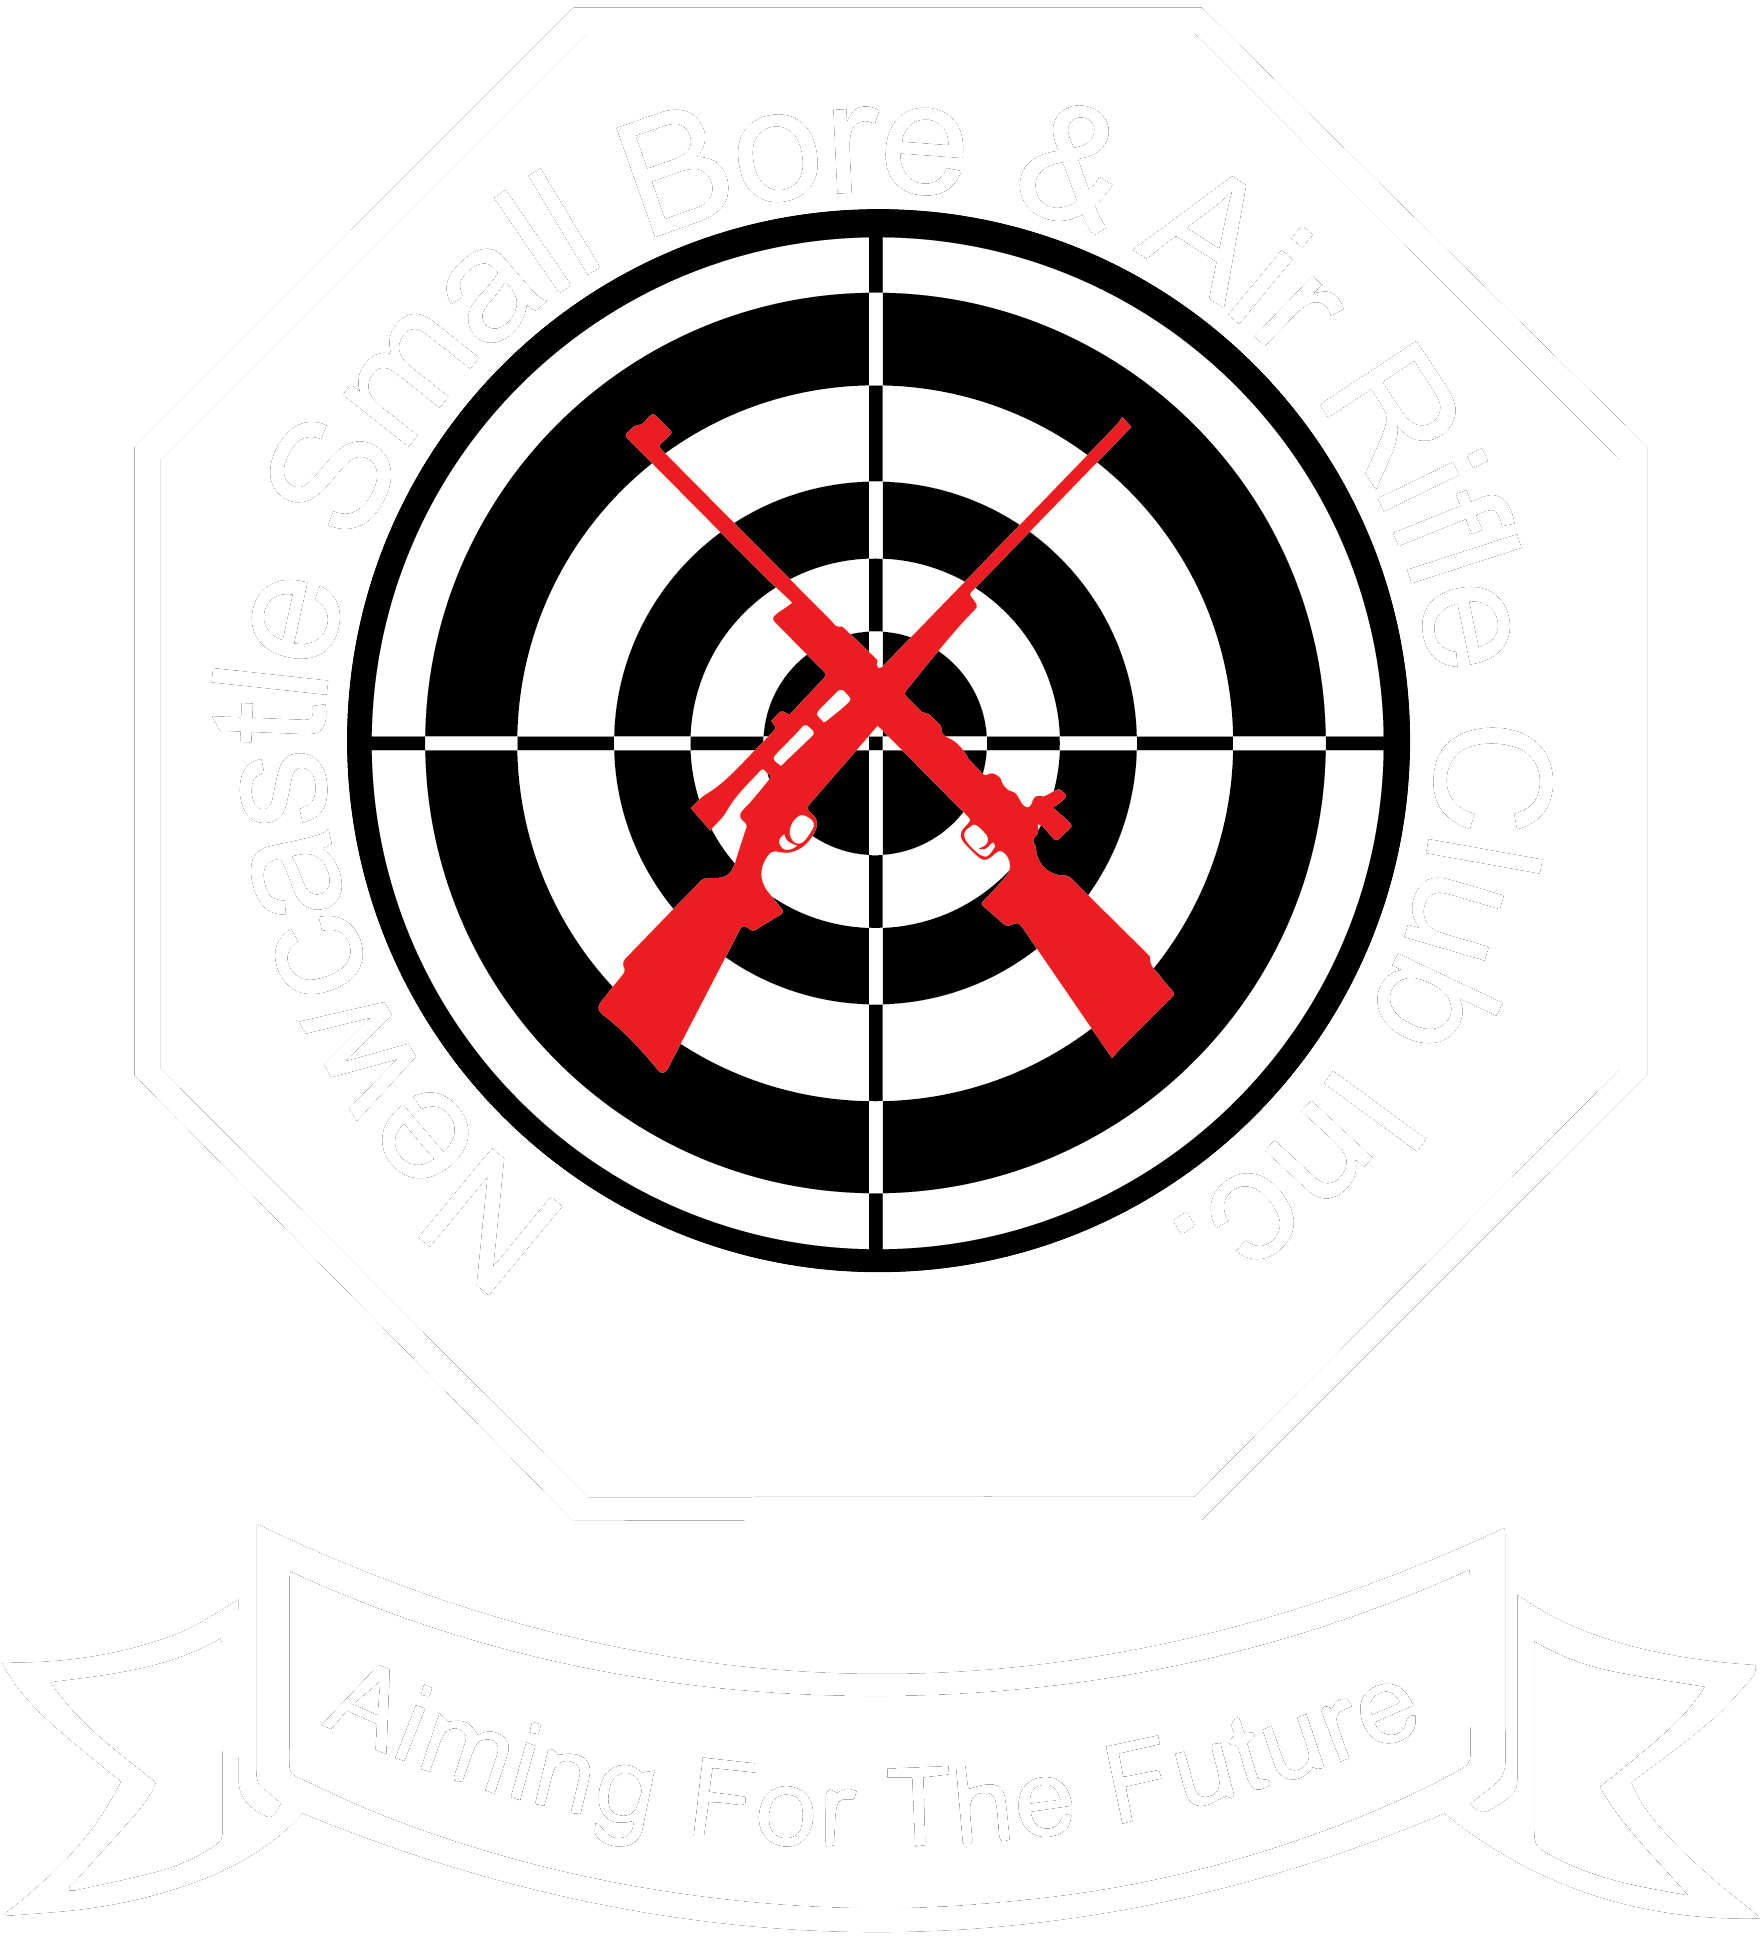 Newcastle Small Bore & Air Rifle Club logo